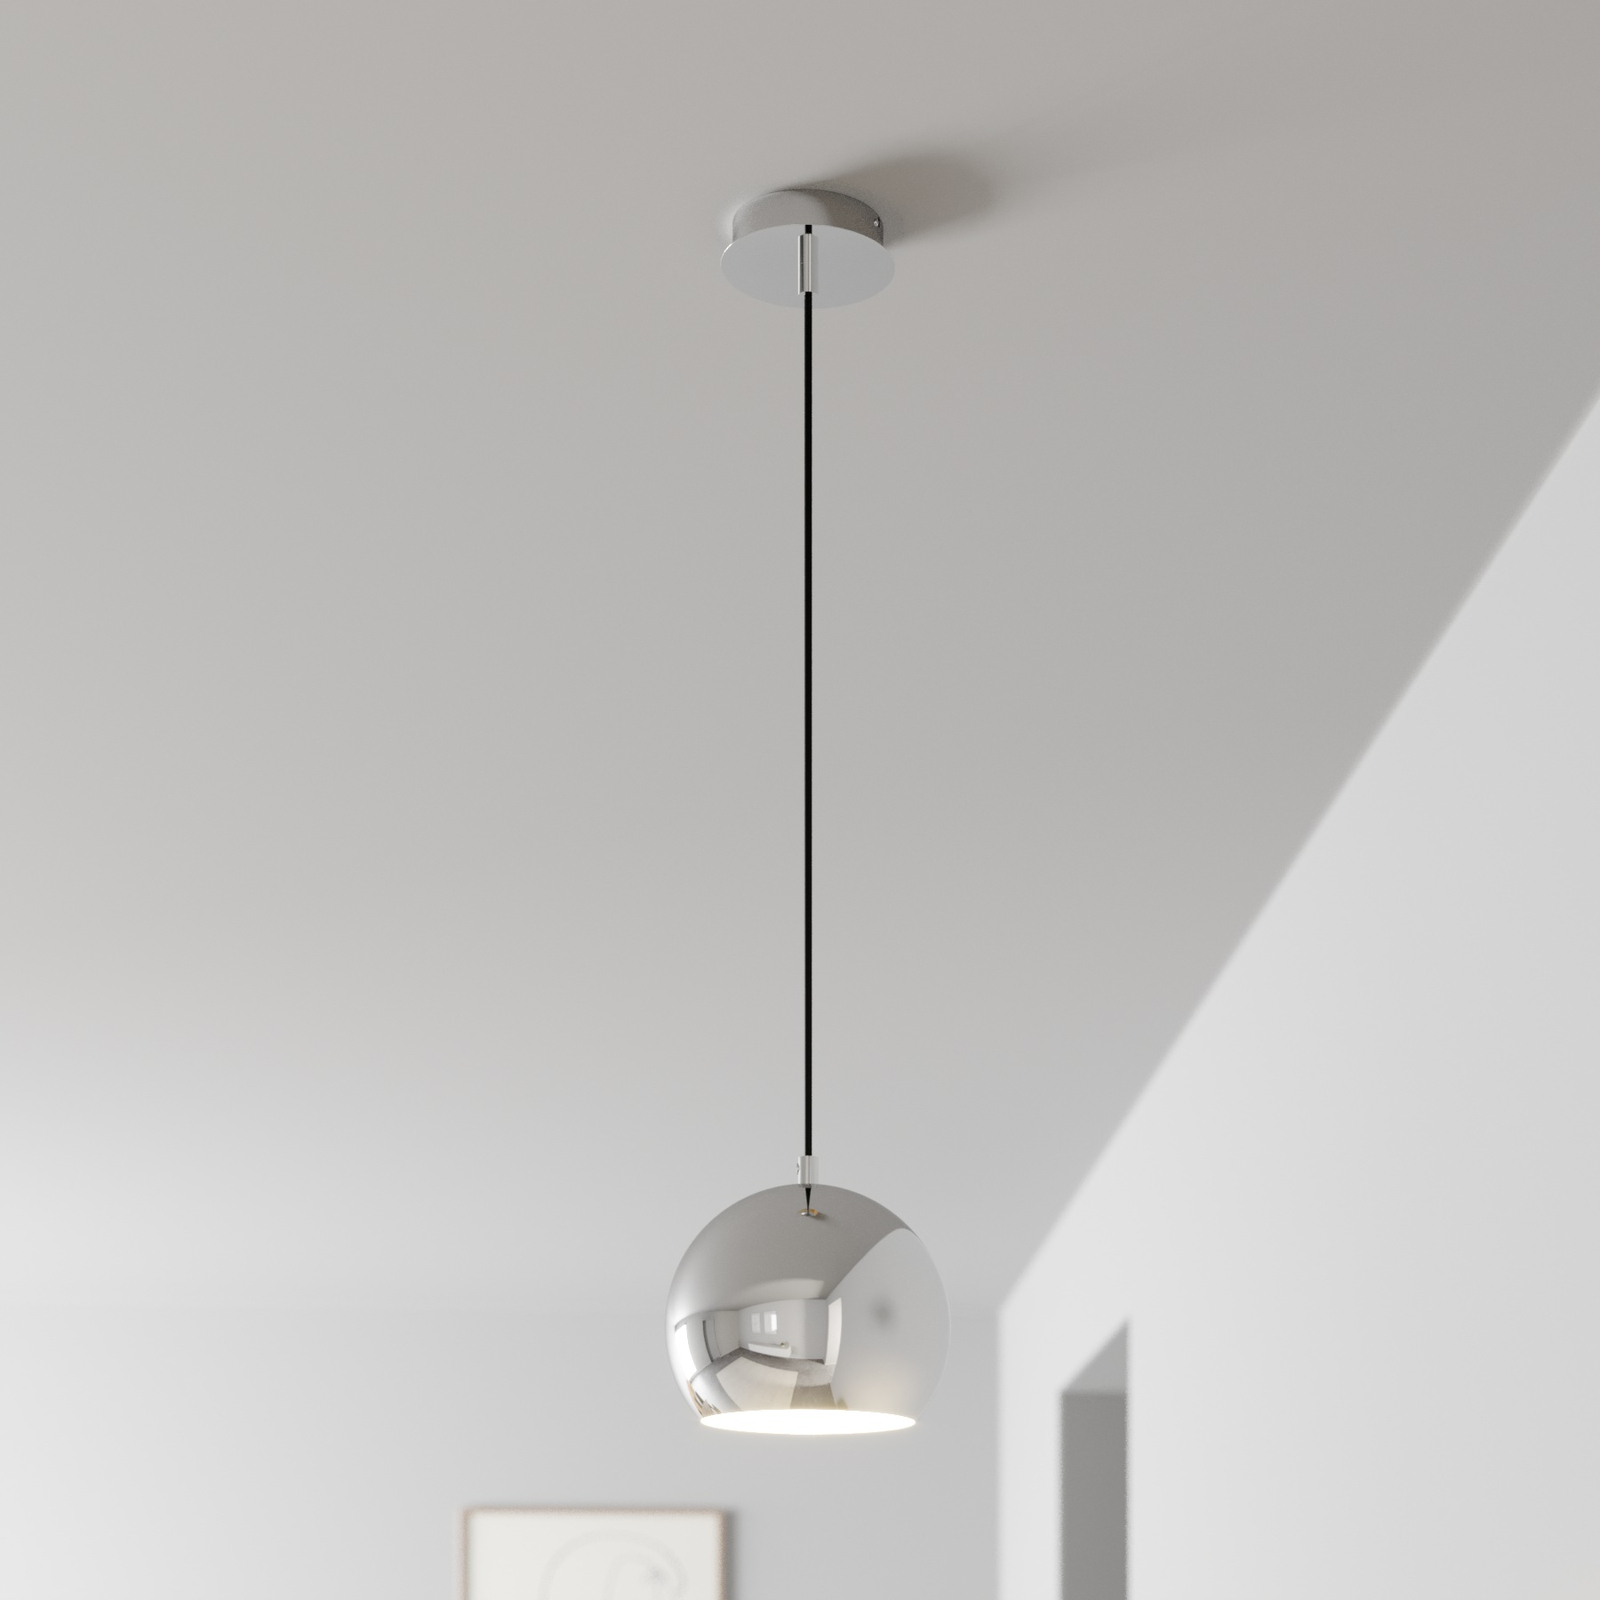 Cool Métal LAMPES série Retro APPLIQUES Plafond Lampes Lampadaire Lampe de table